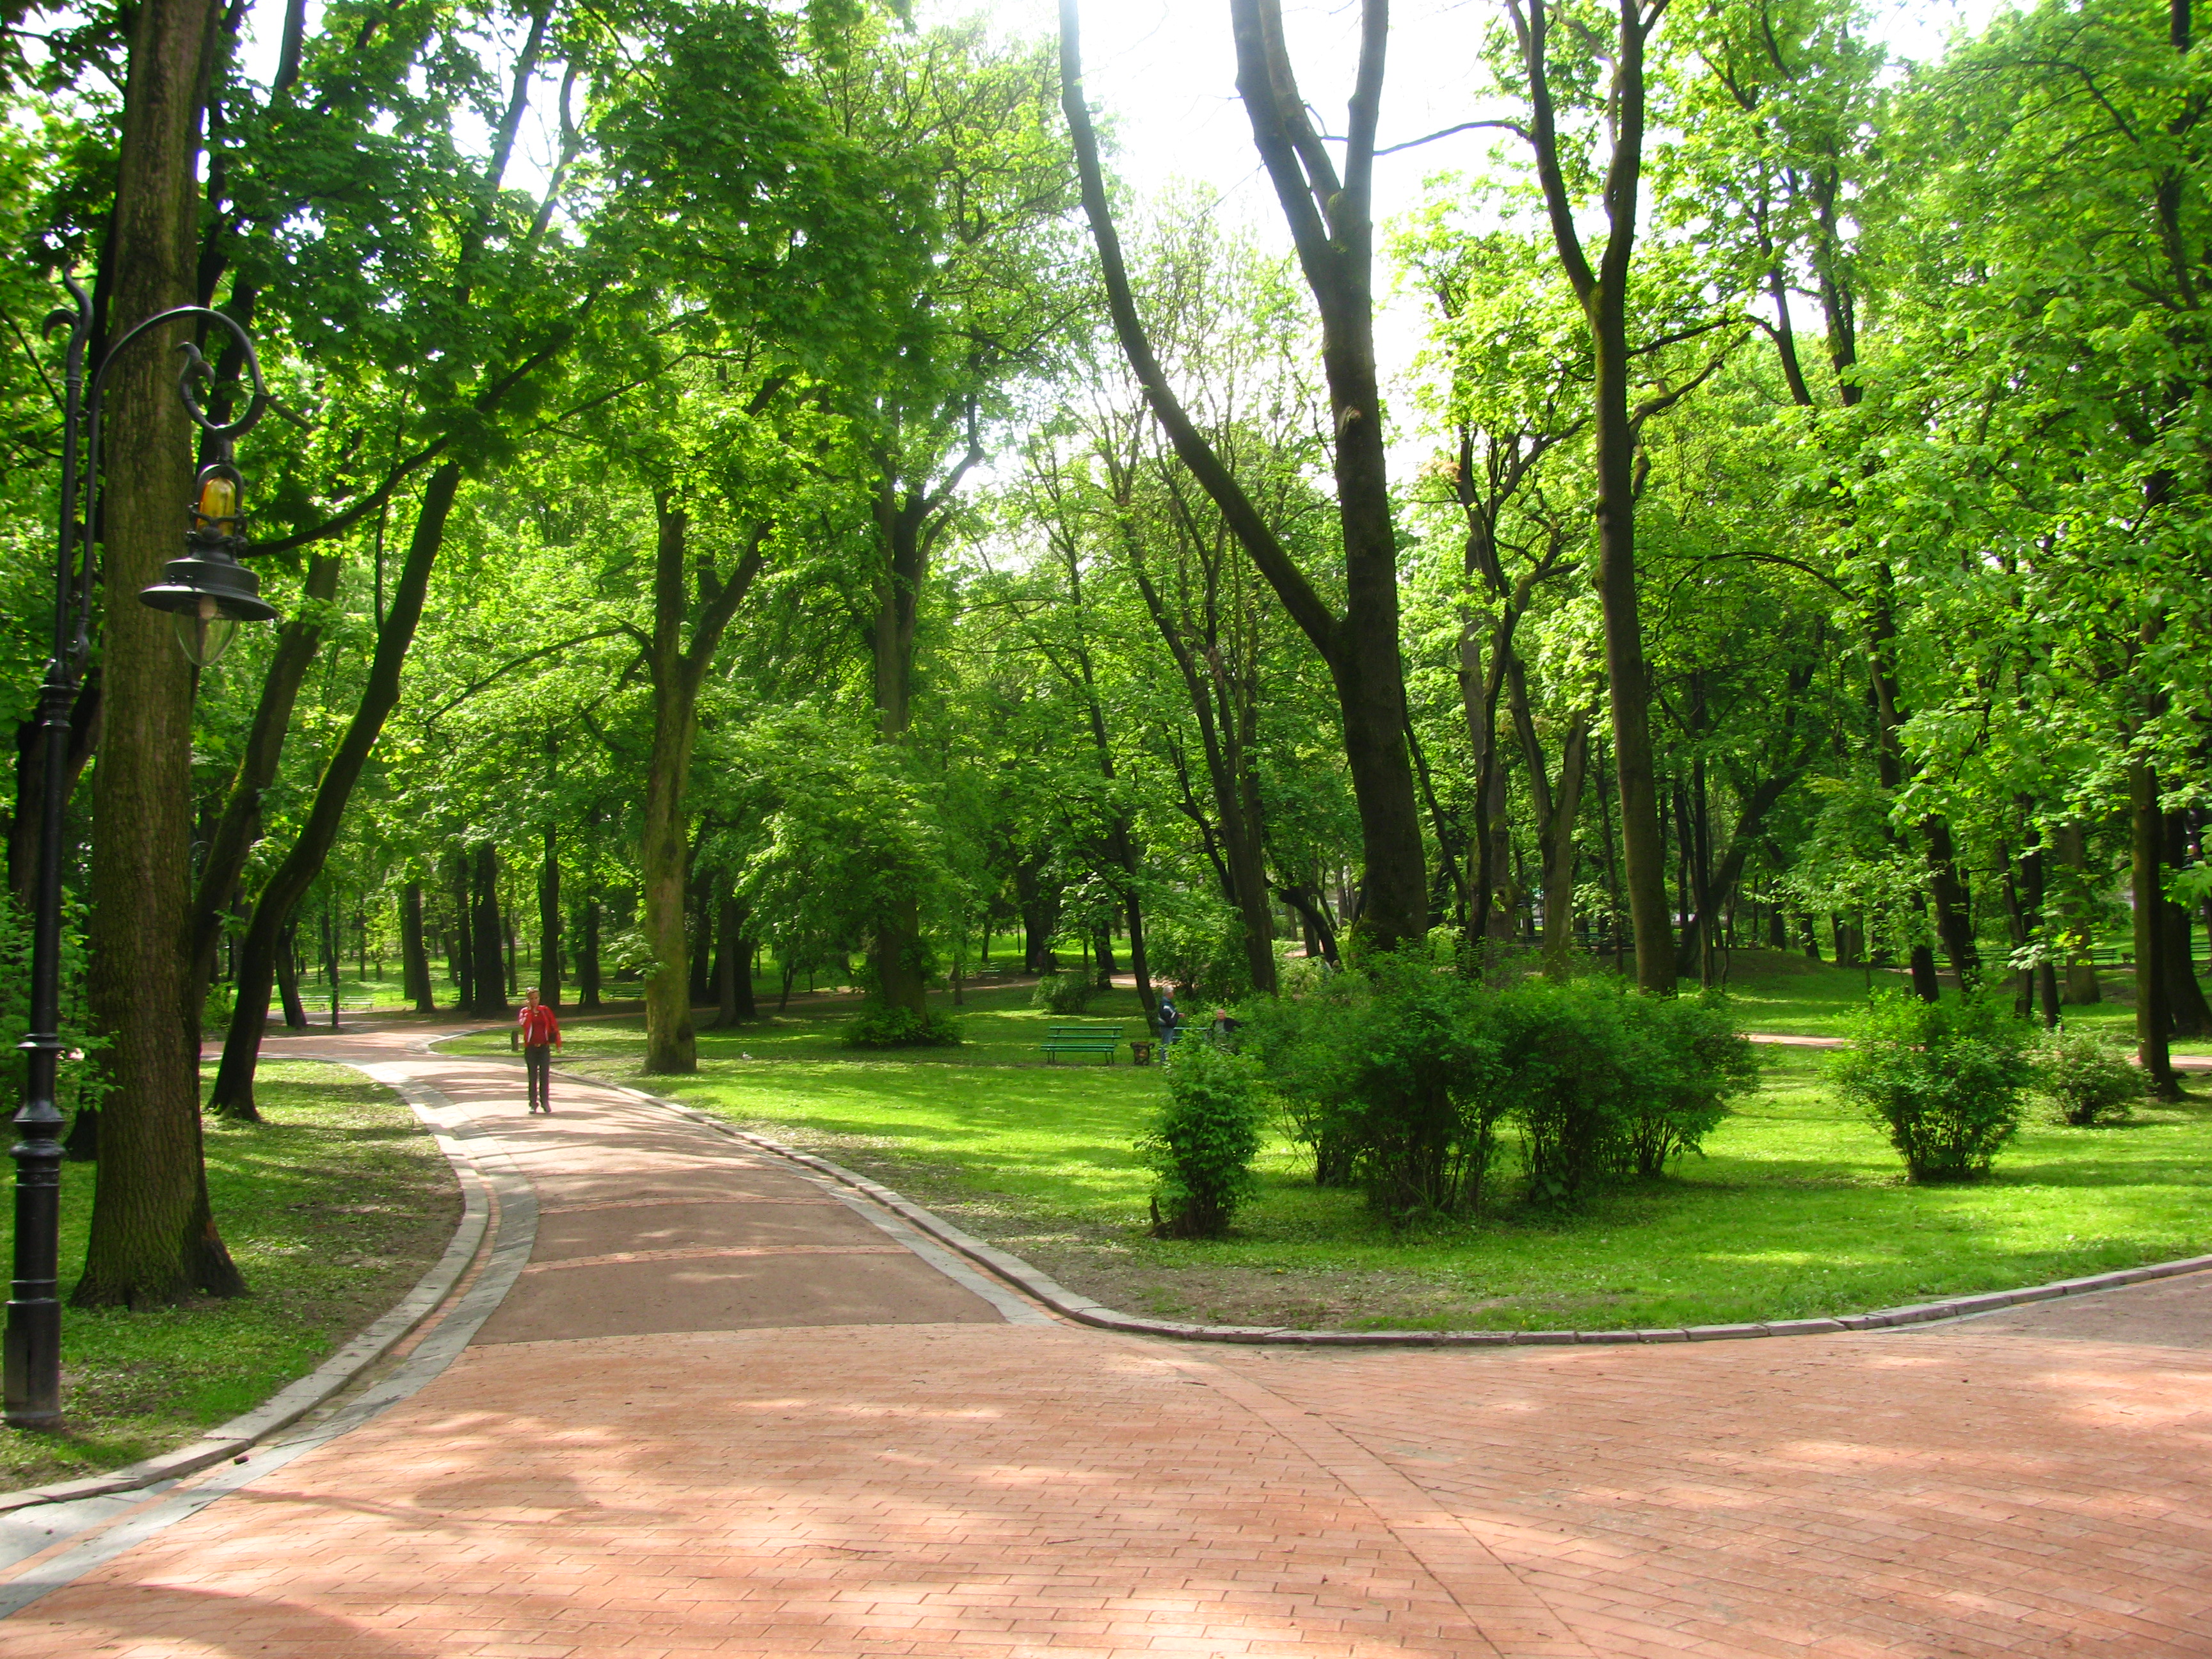 Городские зеленые зоны. Парк «городской лесопарк».. Скверы Москвы. Сквер парка Шерстяник. Пар.